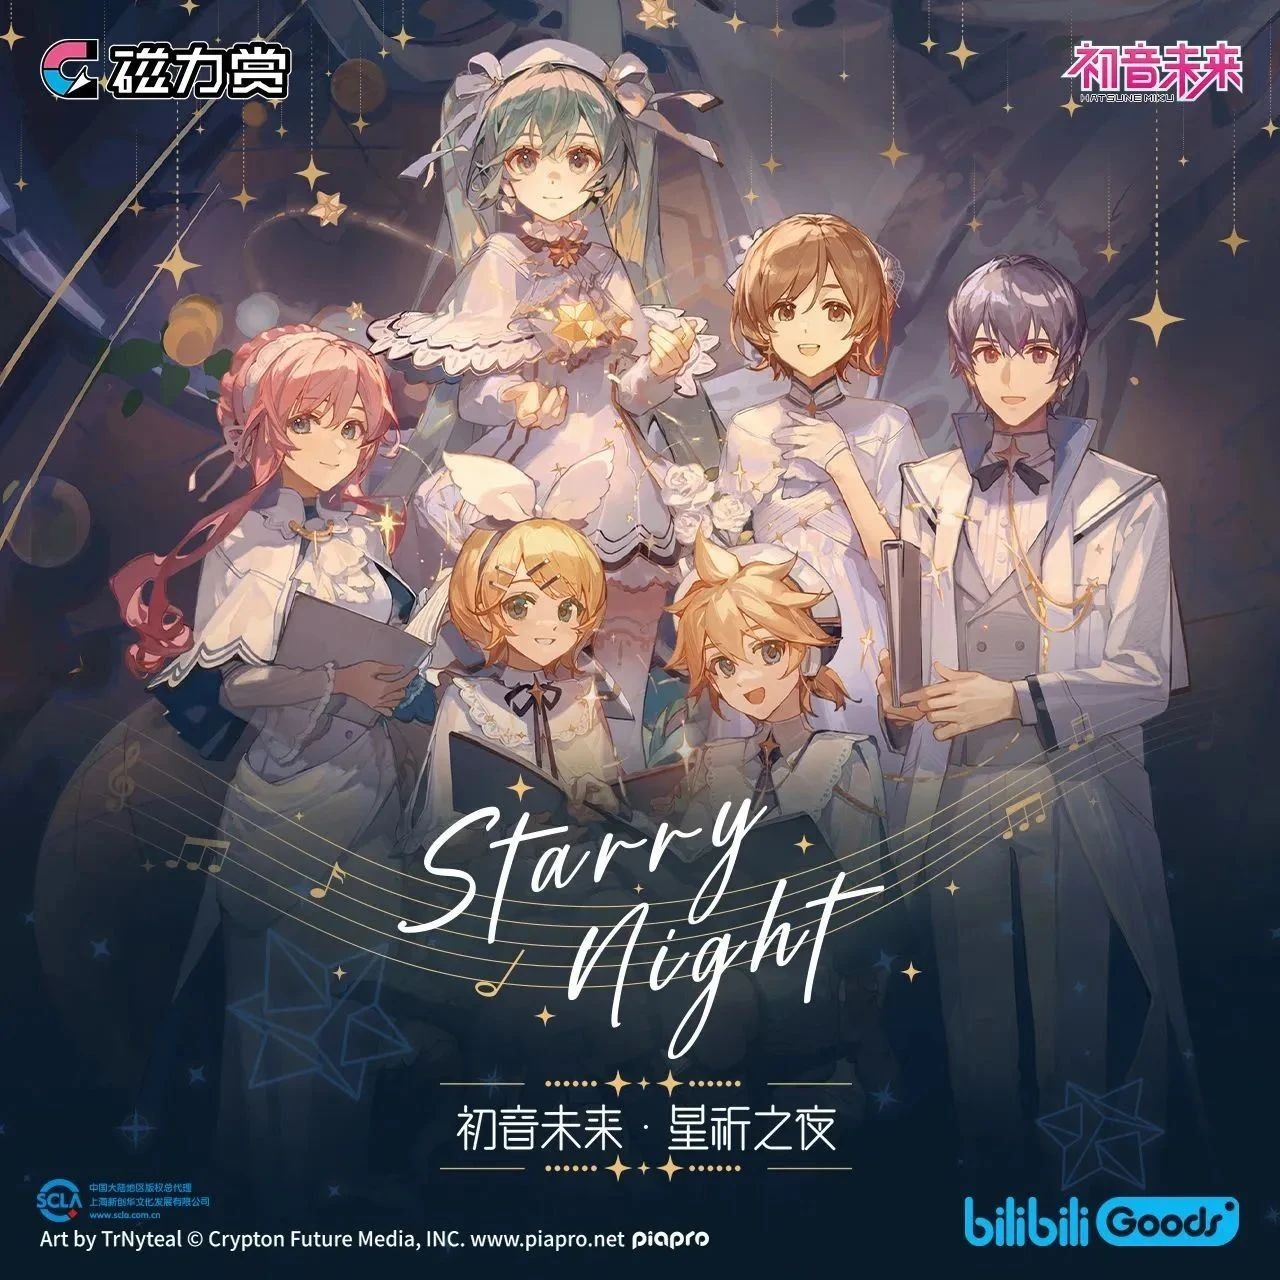 【磁力赏】初音未来「星祈之夜」系列主题周边发售